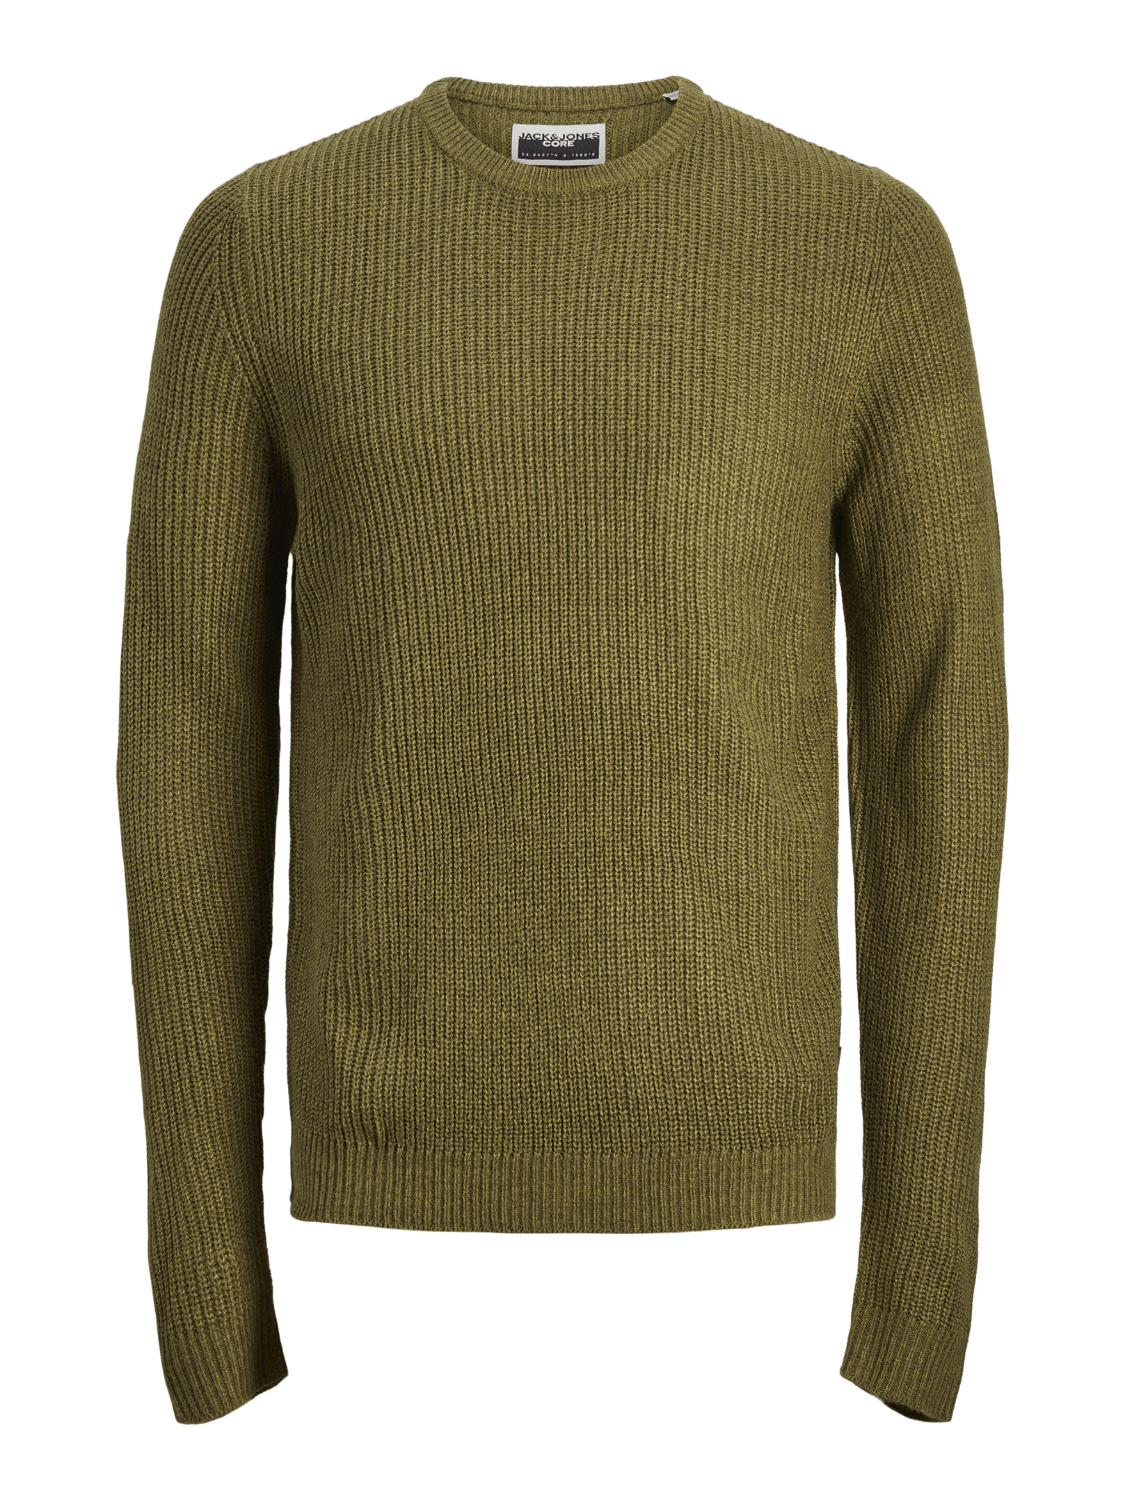 Jersey de punto básico verde oliva - JCOTWIST